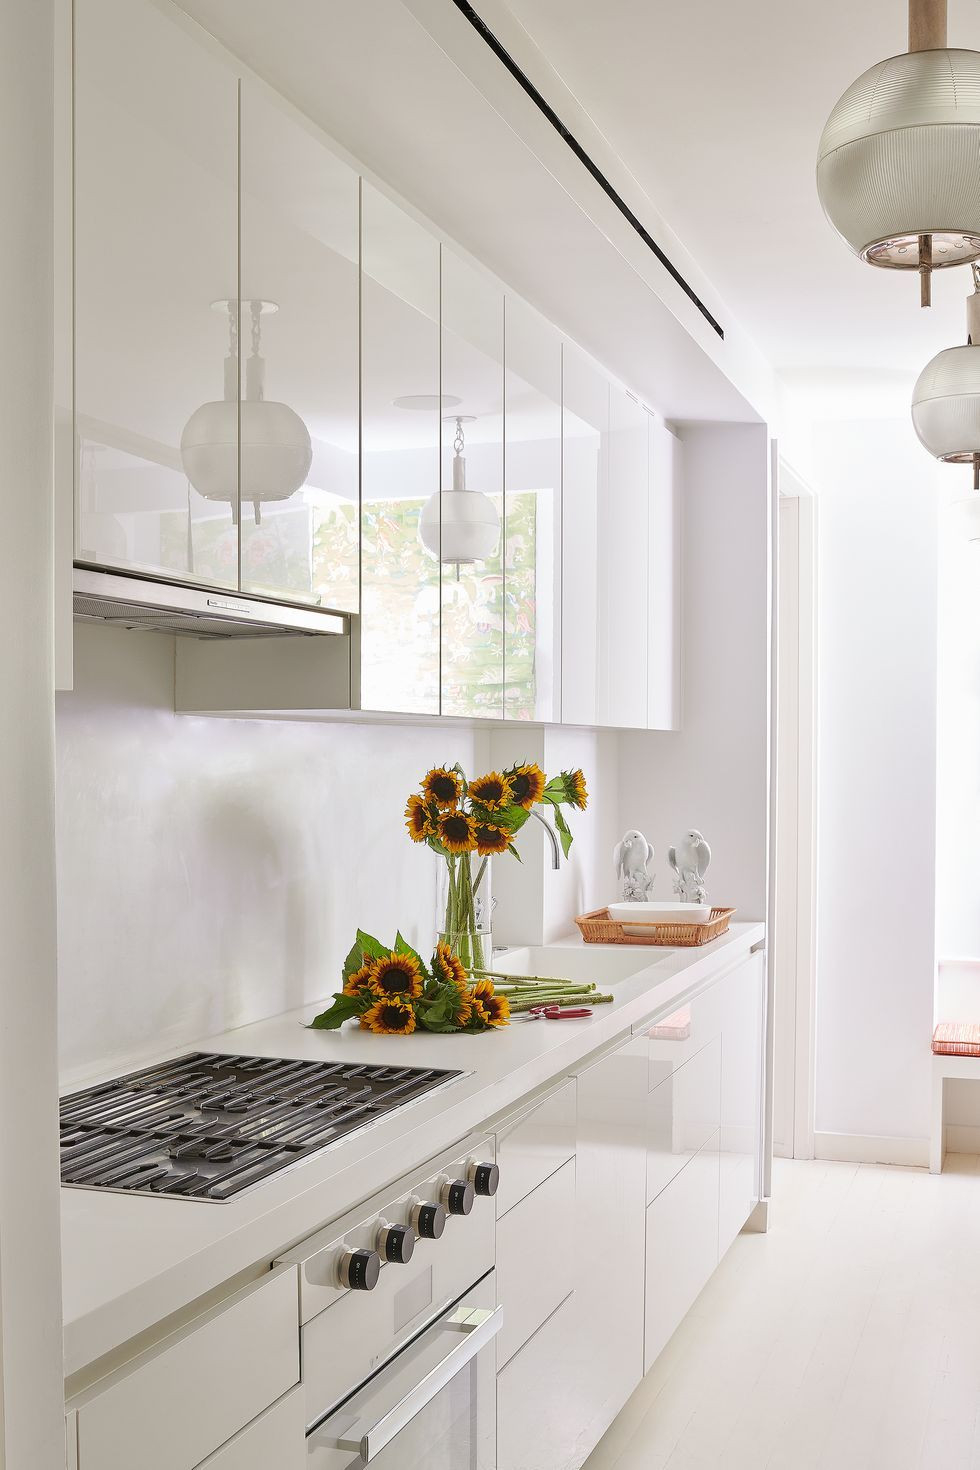 94 Kitchen Design Ideas - Remodeling Ideas For Interior Design with regard to Kitchen Design